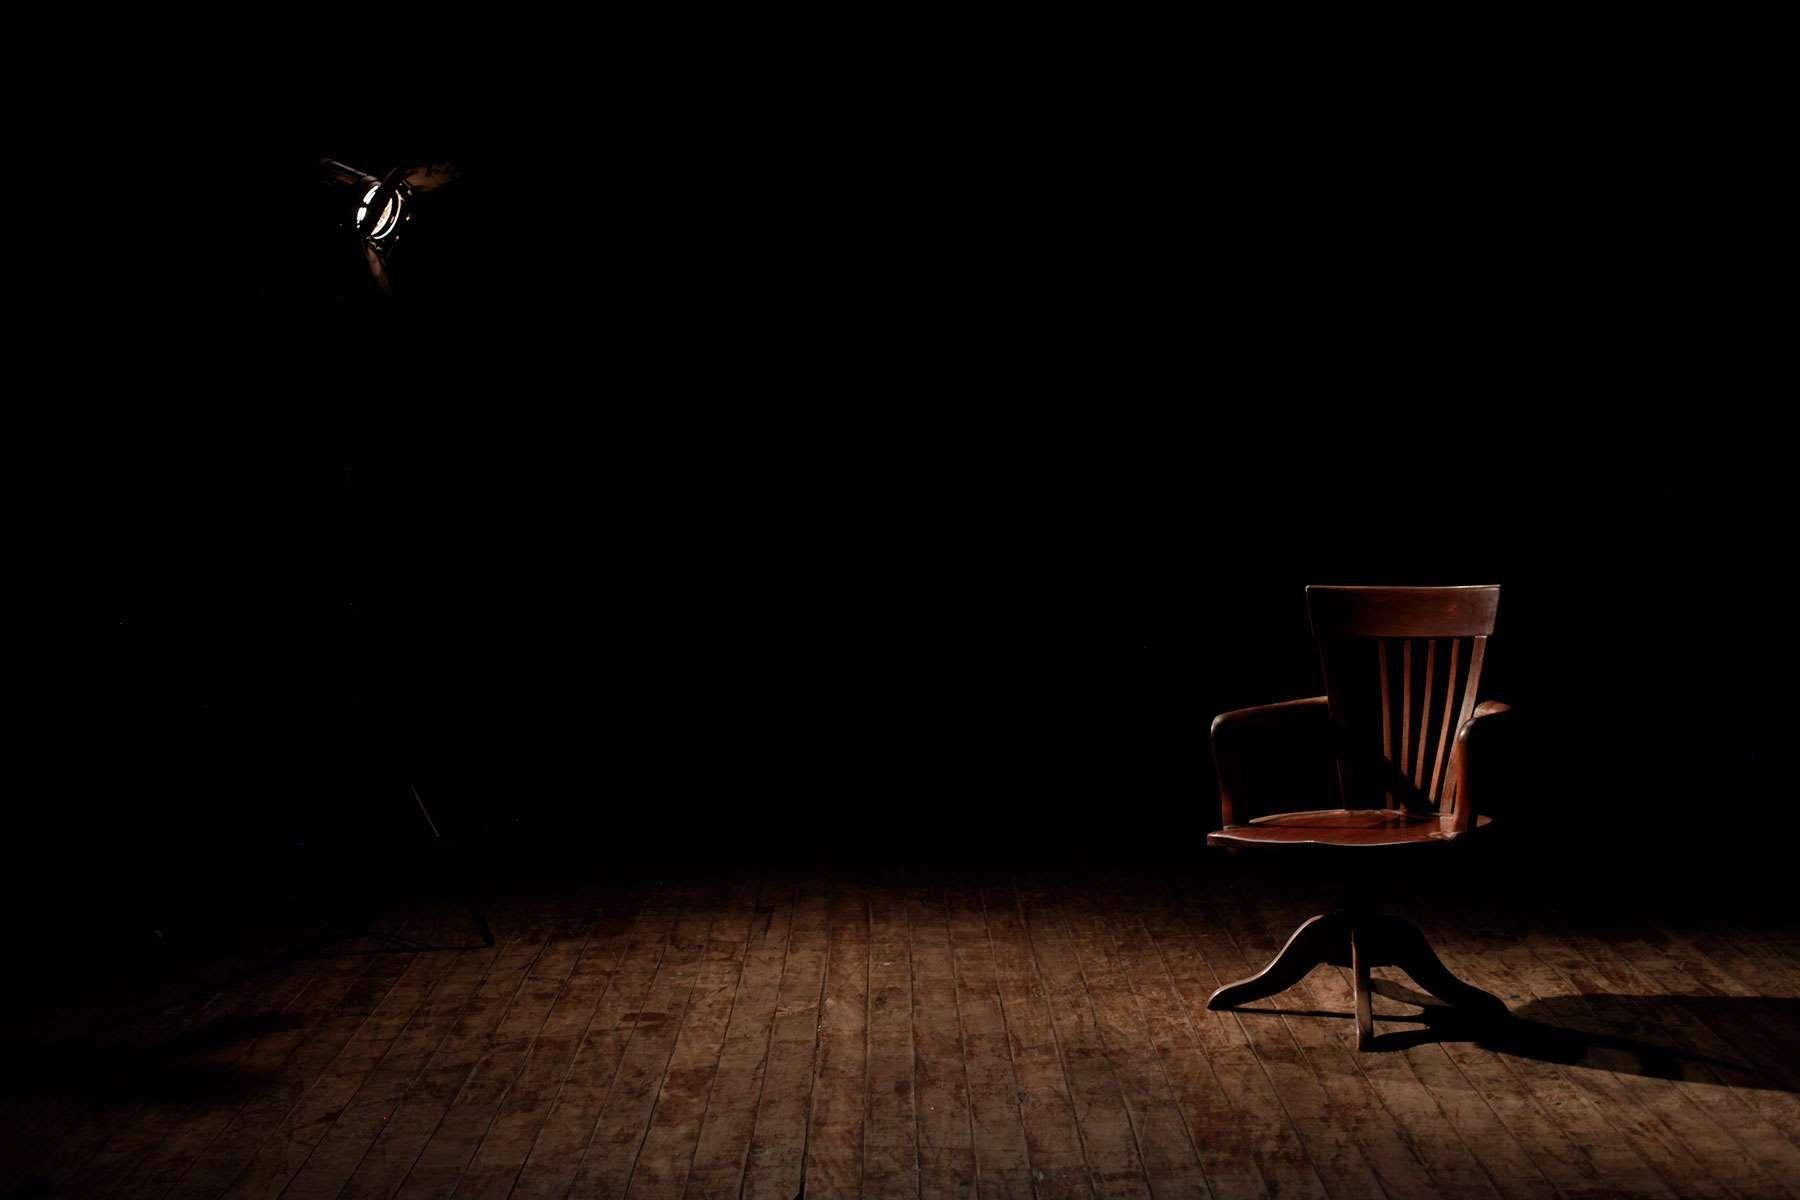 armchair #art #chair #dark #empty #floor #furniture #indoors #light